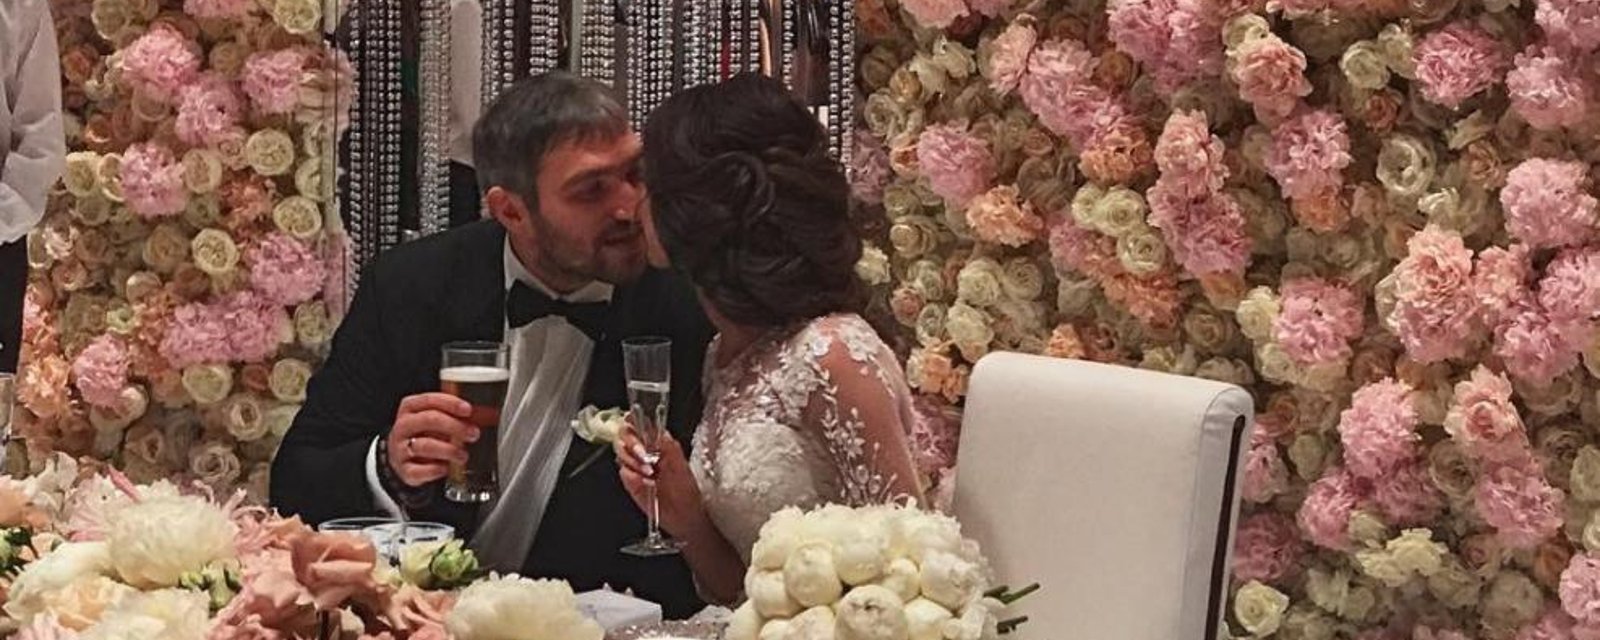 Alex Ovechkin throws luxurious, glamorious wedding! 